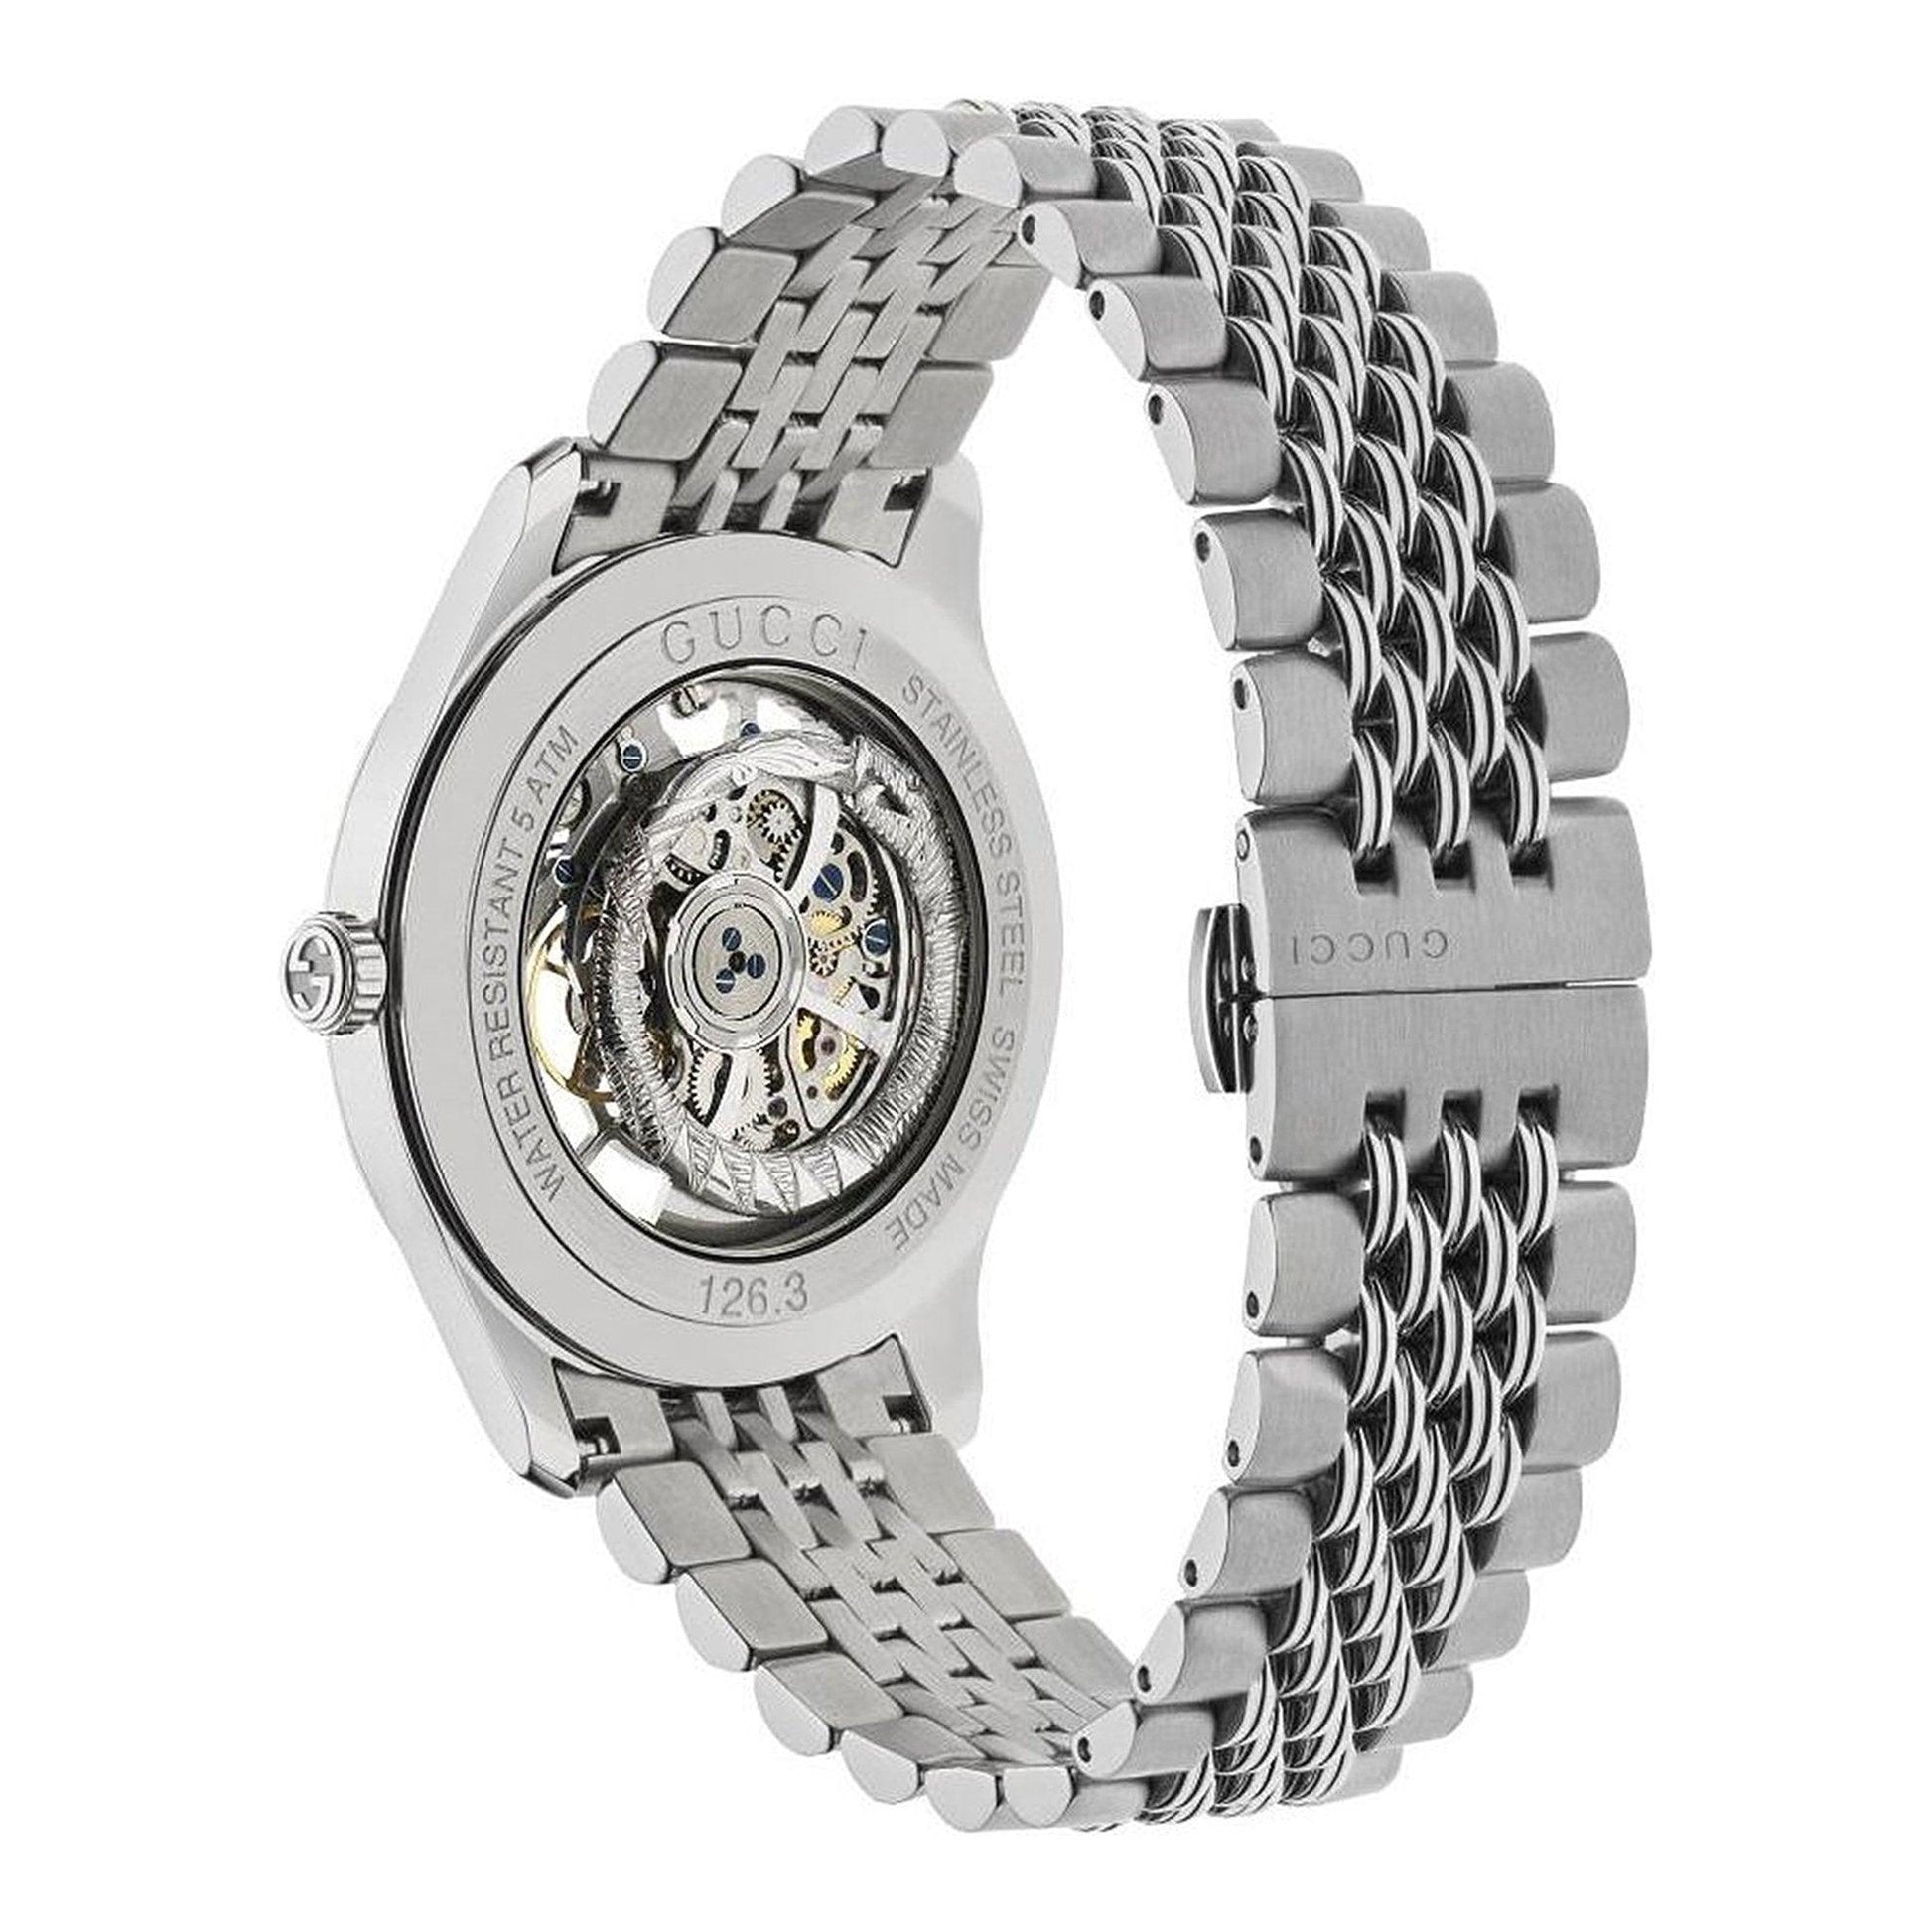 Gucci G-Timeless YA126357 orologio unisex meccanico - Kechiq Concept Boutique